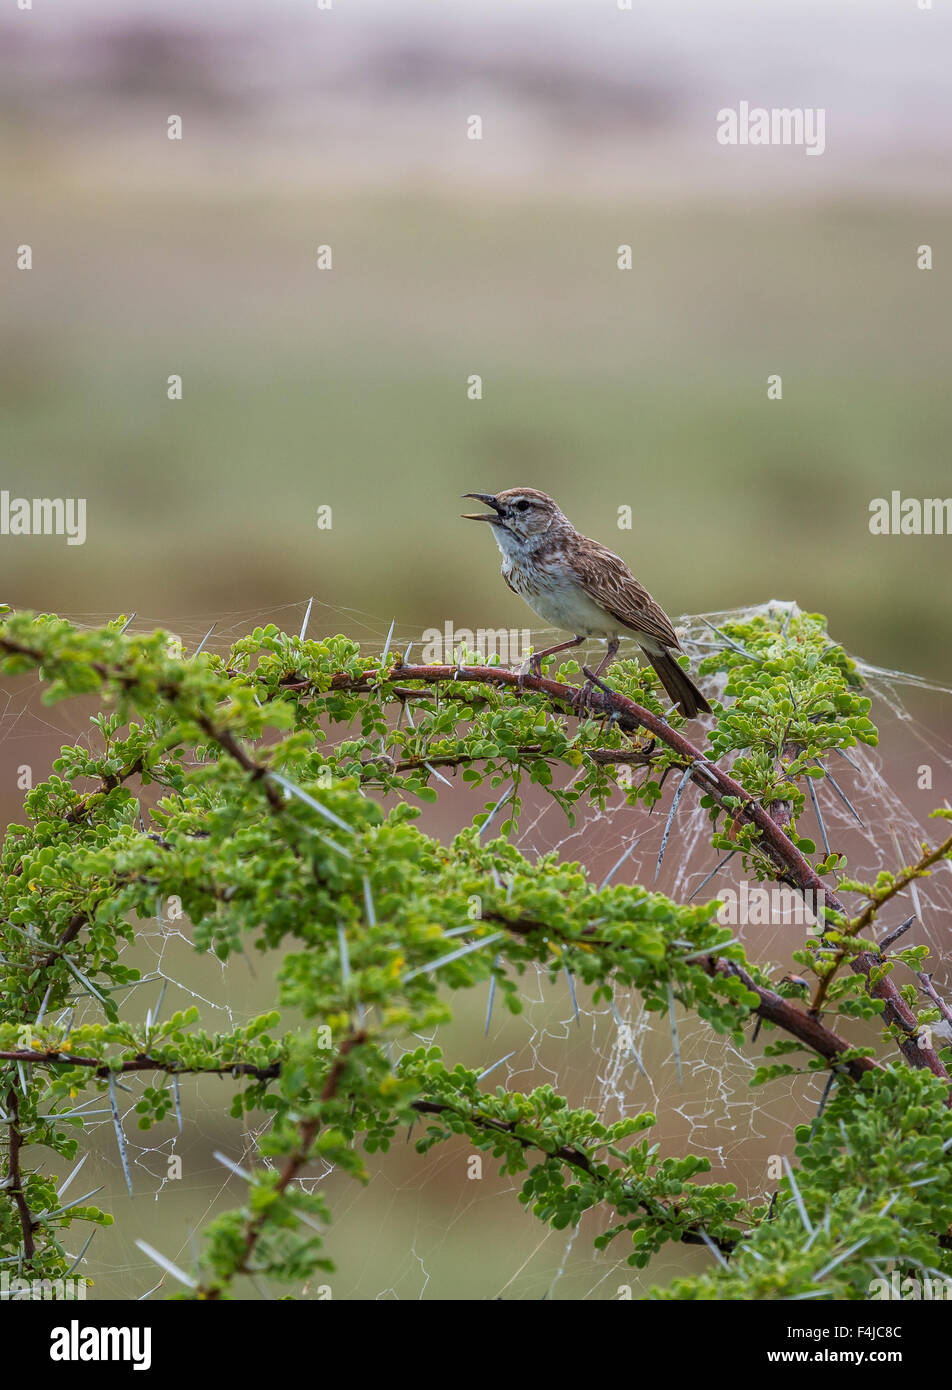 Manakin bird singing perched on tree branch. Etosha National Park, Namibia, Africa Stock Photo